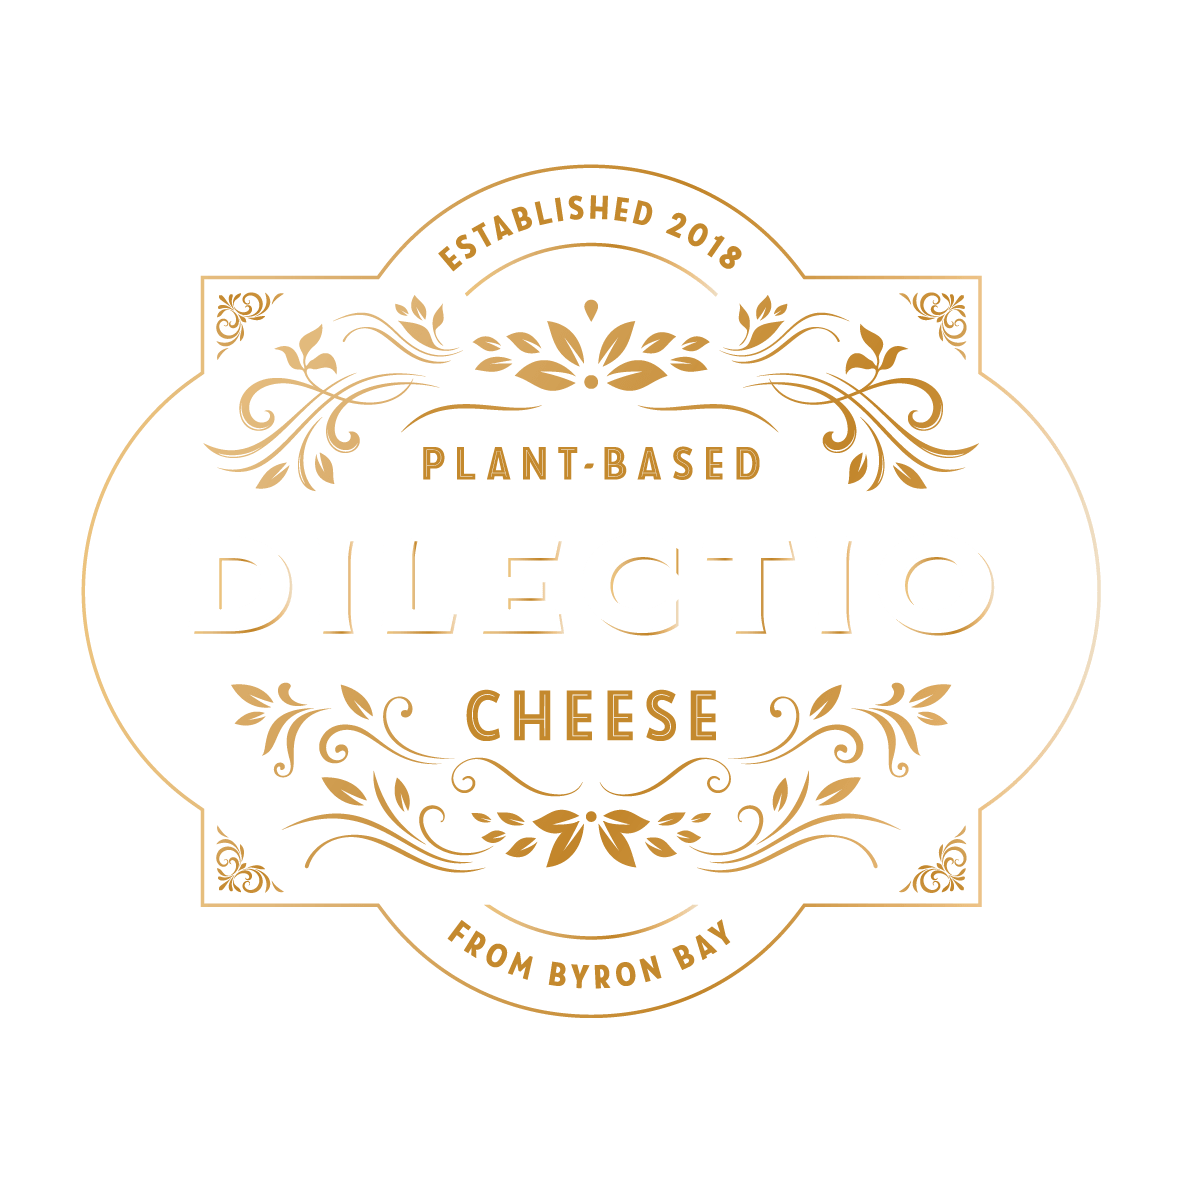 Dilectio